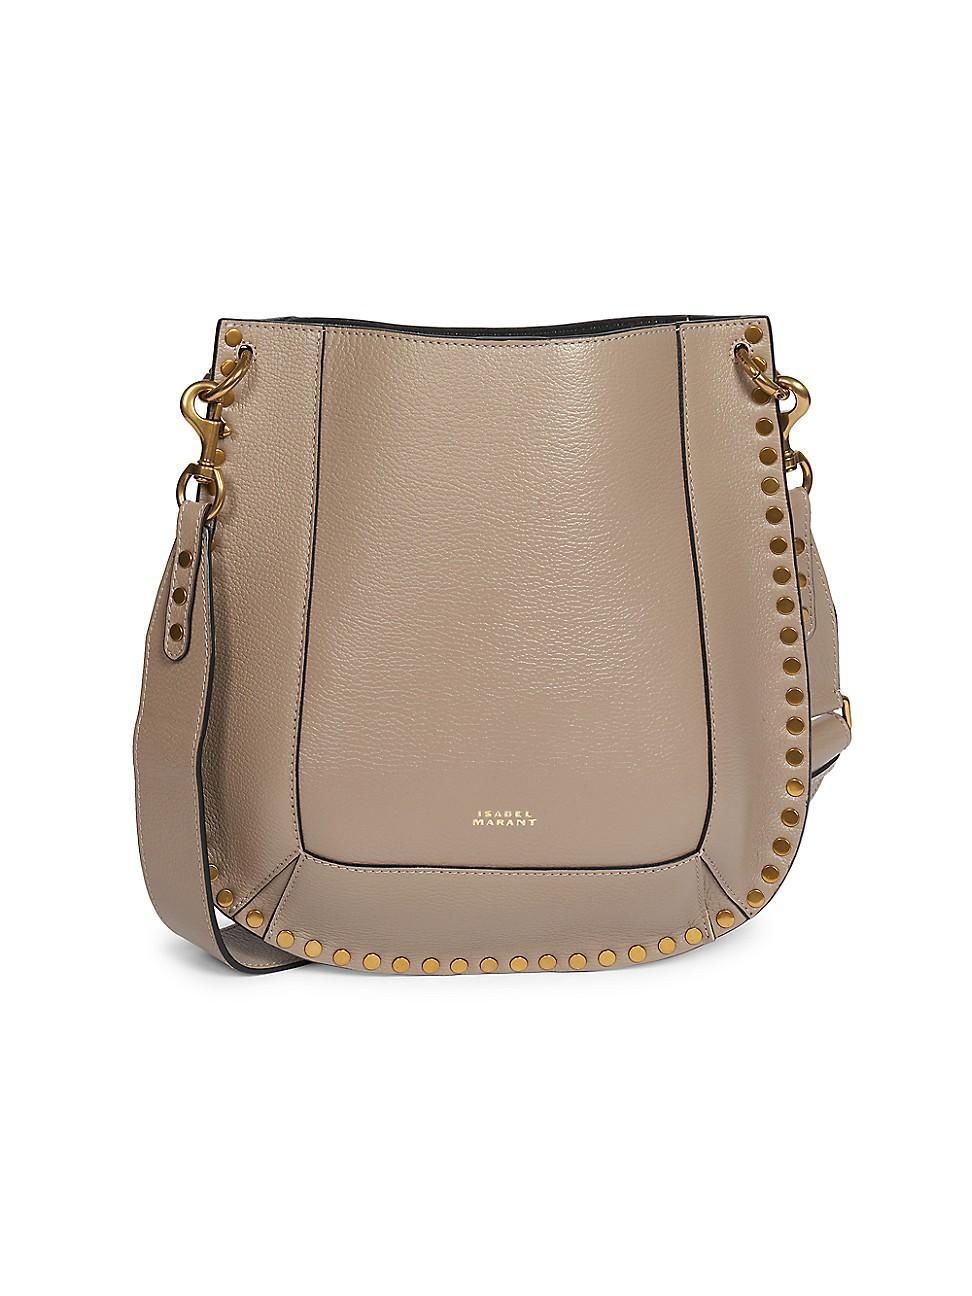 Isabel Marant Oskan Leather Shoulder Bag Product Image